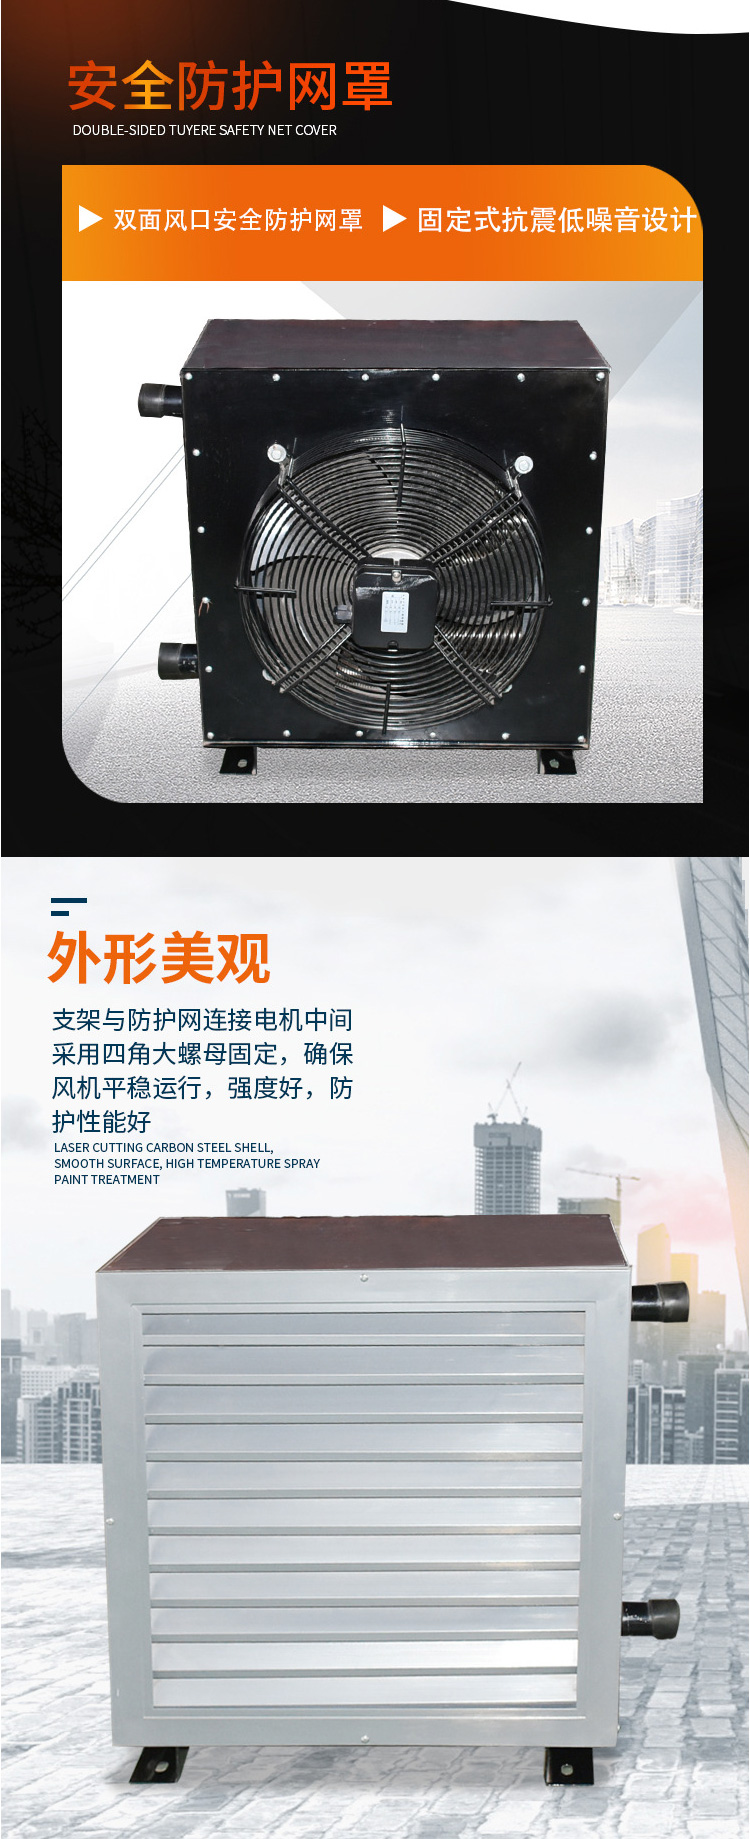 蒸汽型暖风机/暖风机蒸汽型/蒸汽型工业暖风机报价